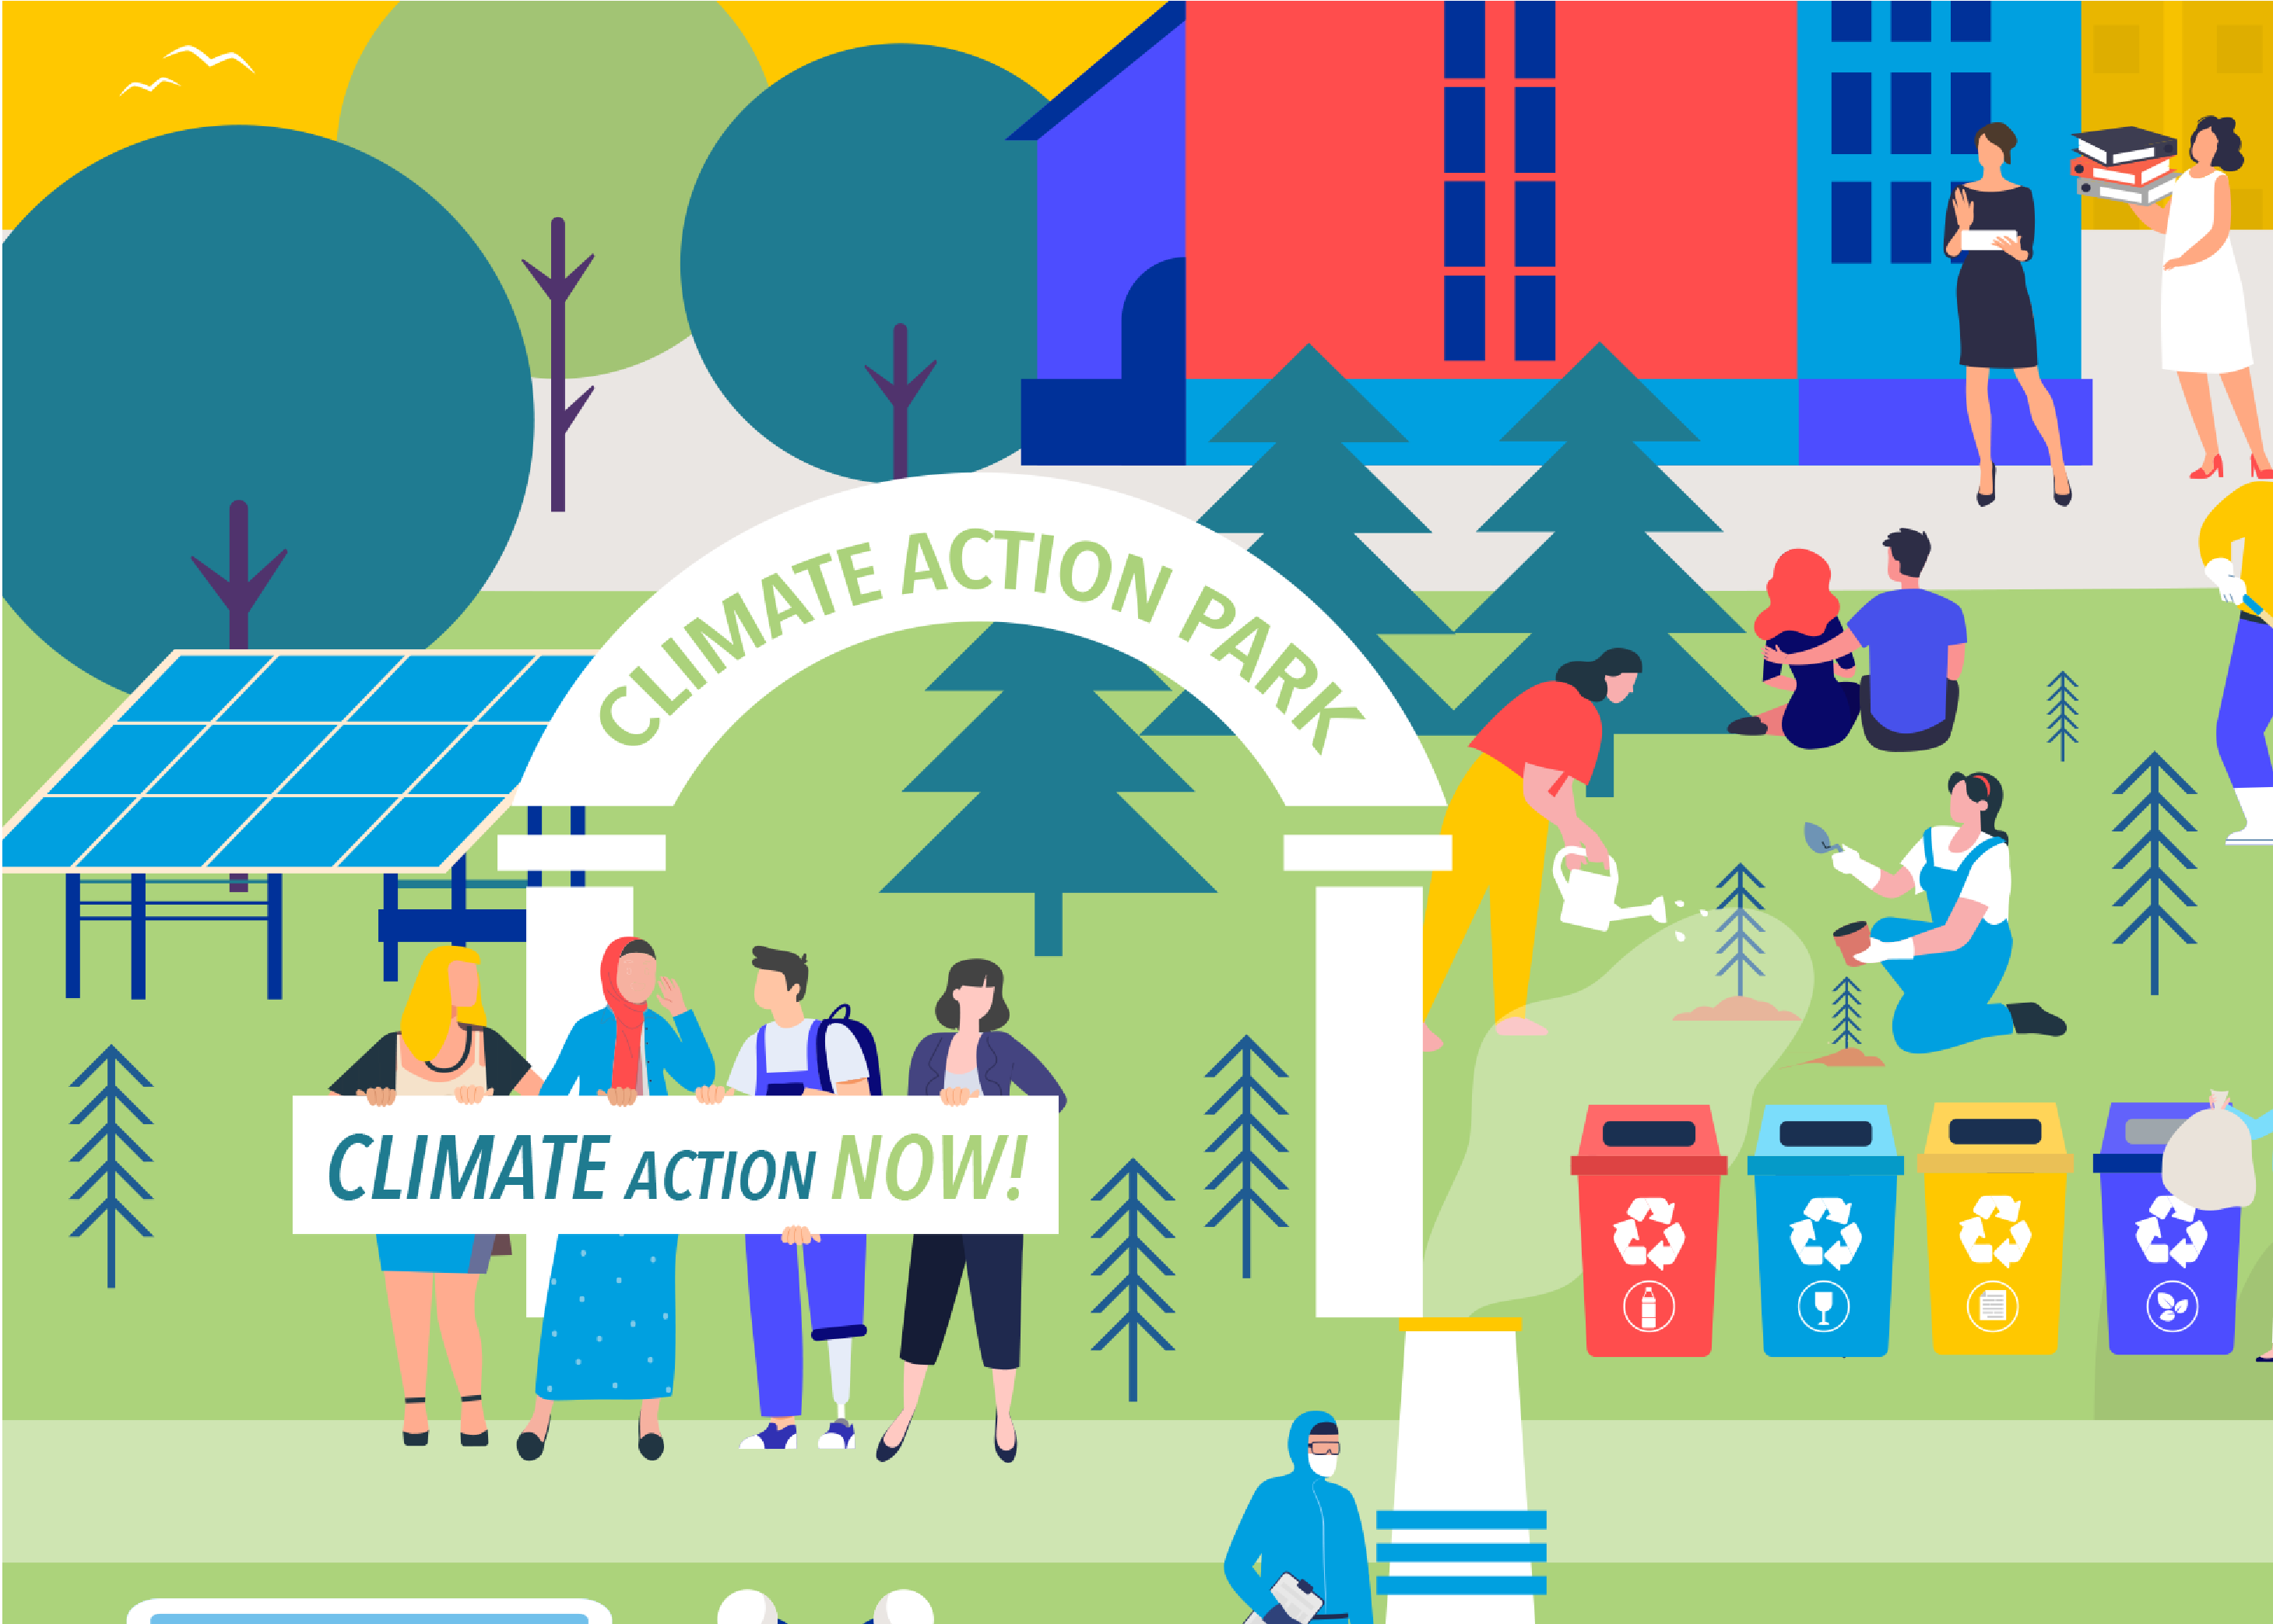 Climate Action Park